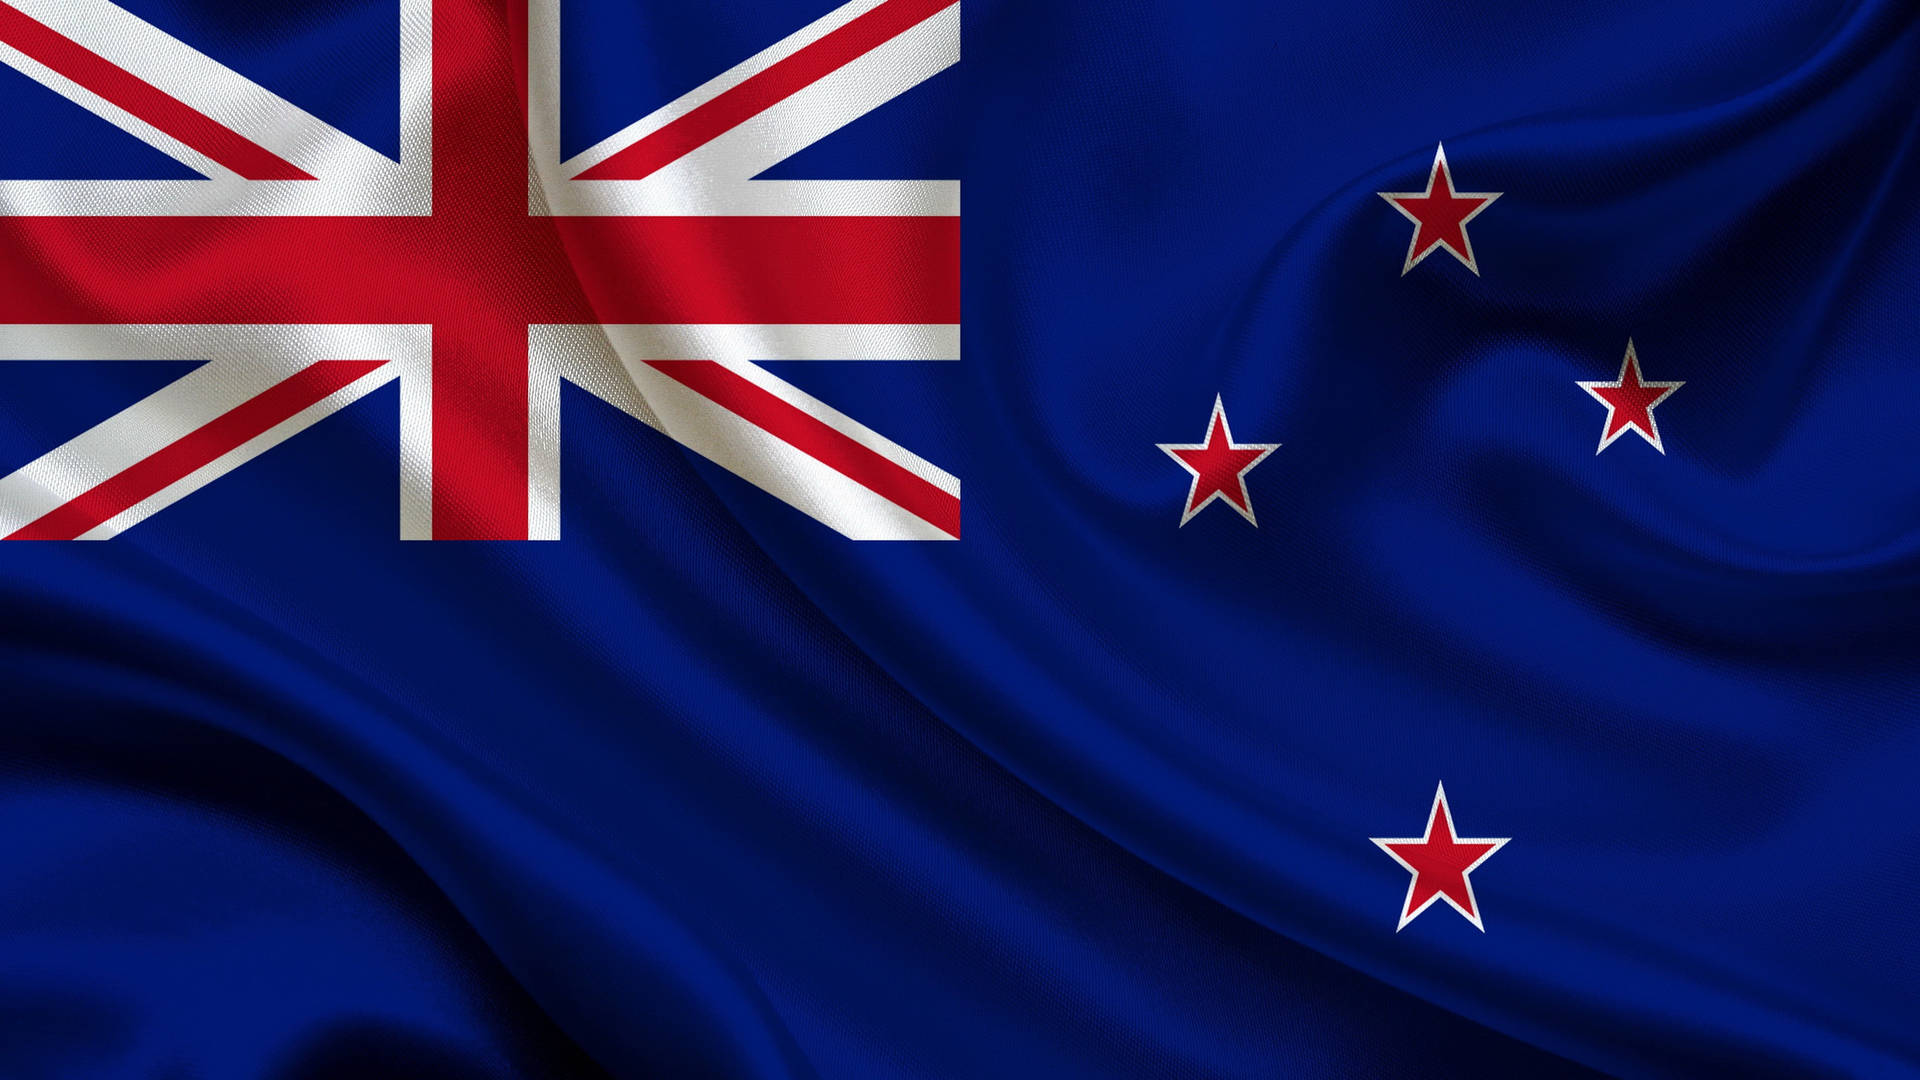 New Zealand National Flag Background